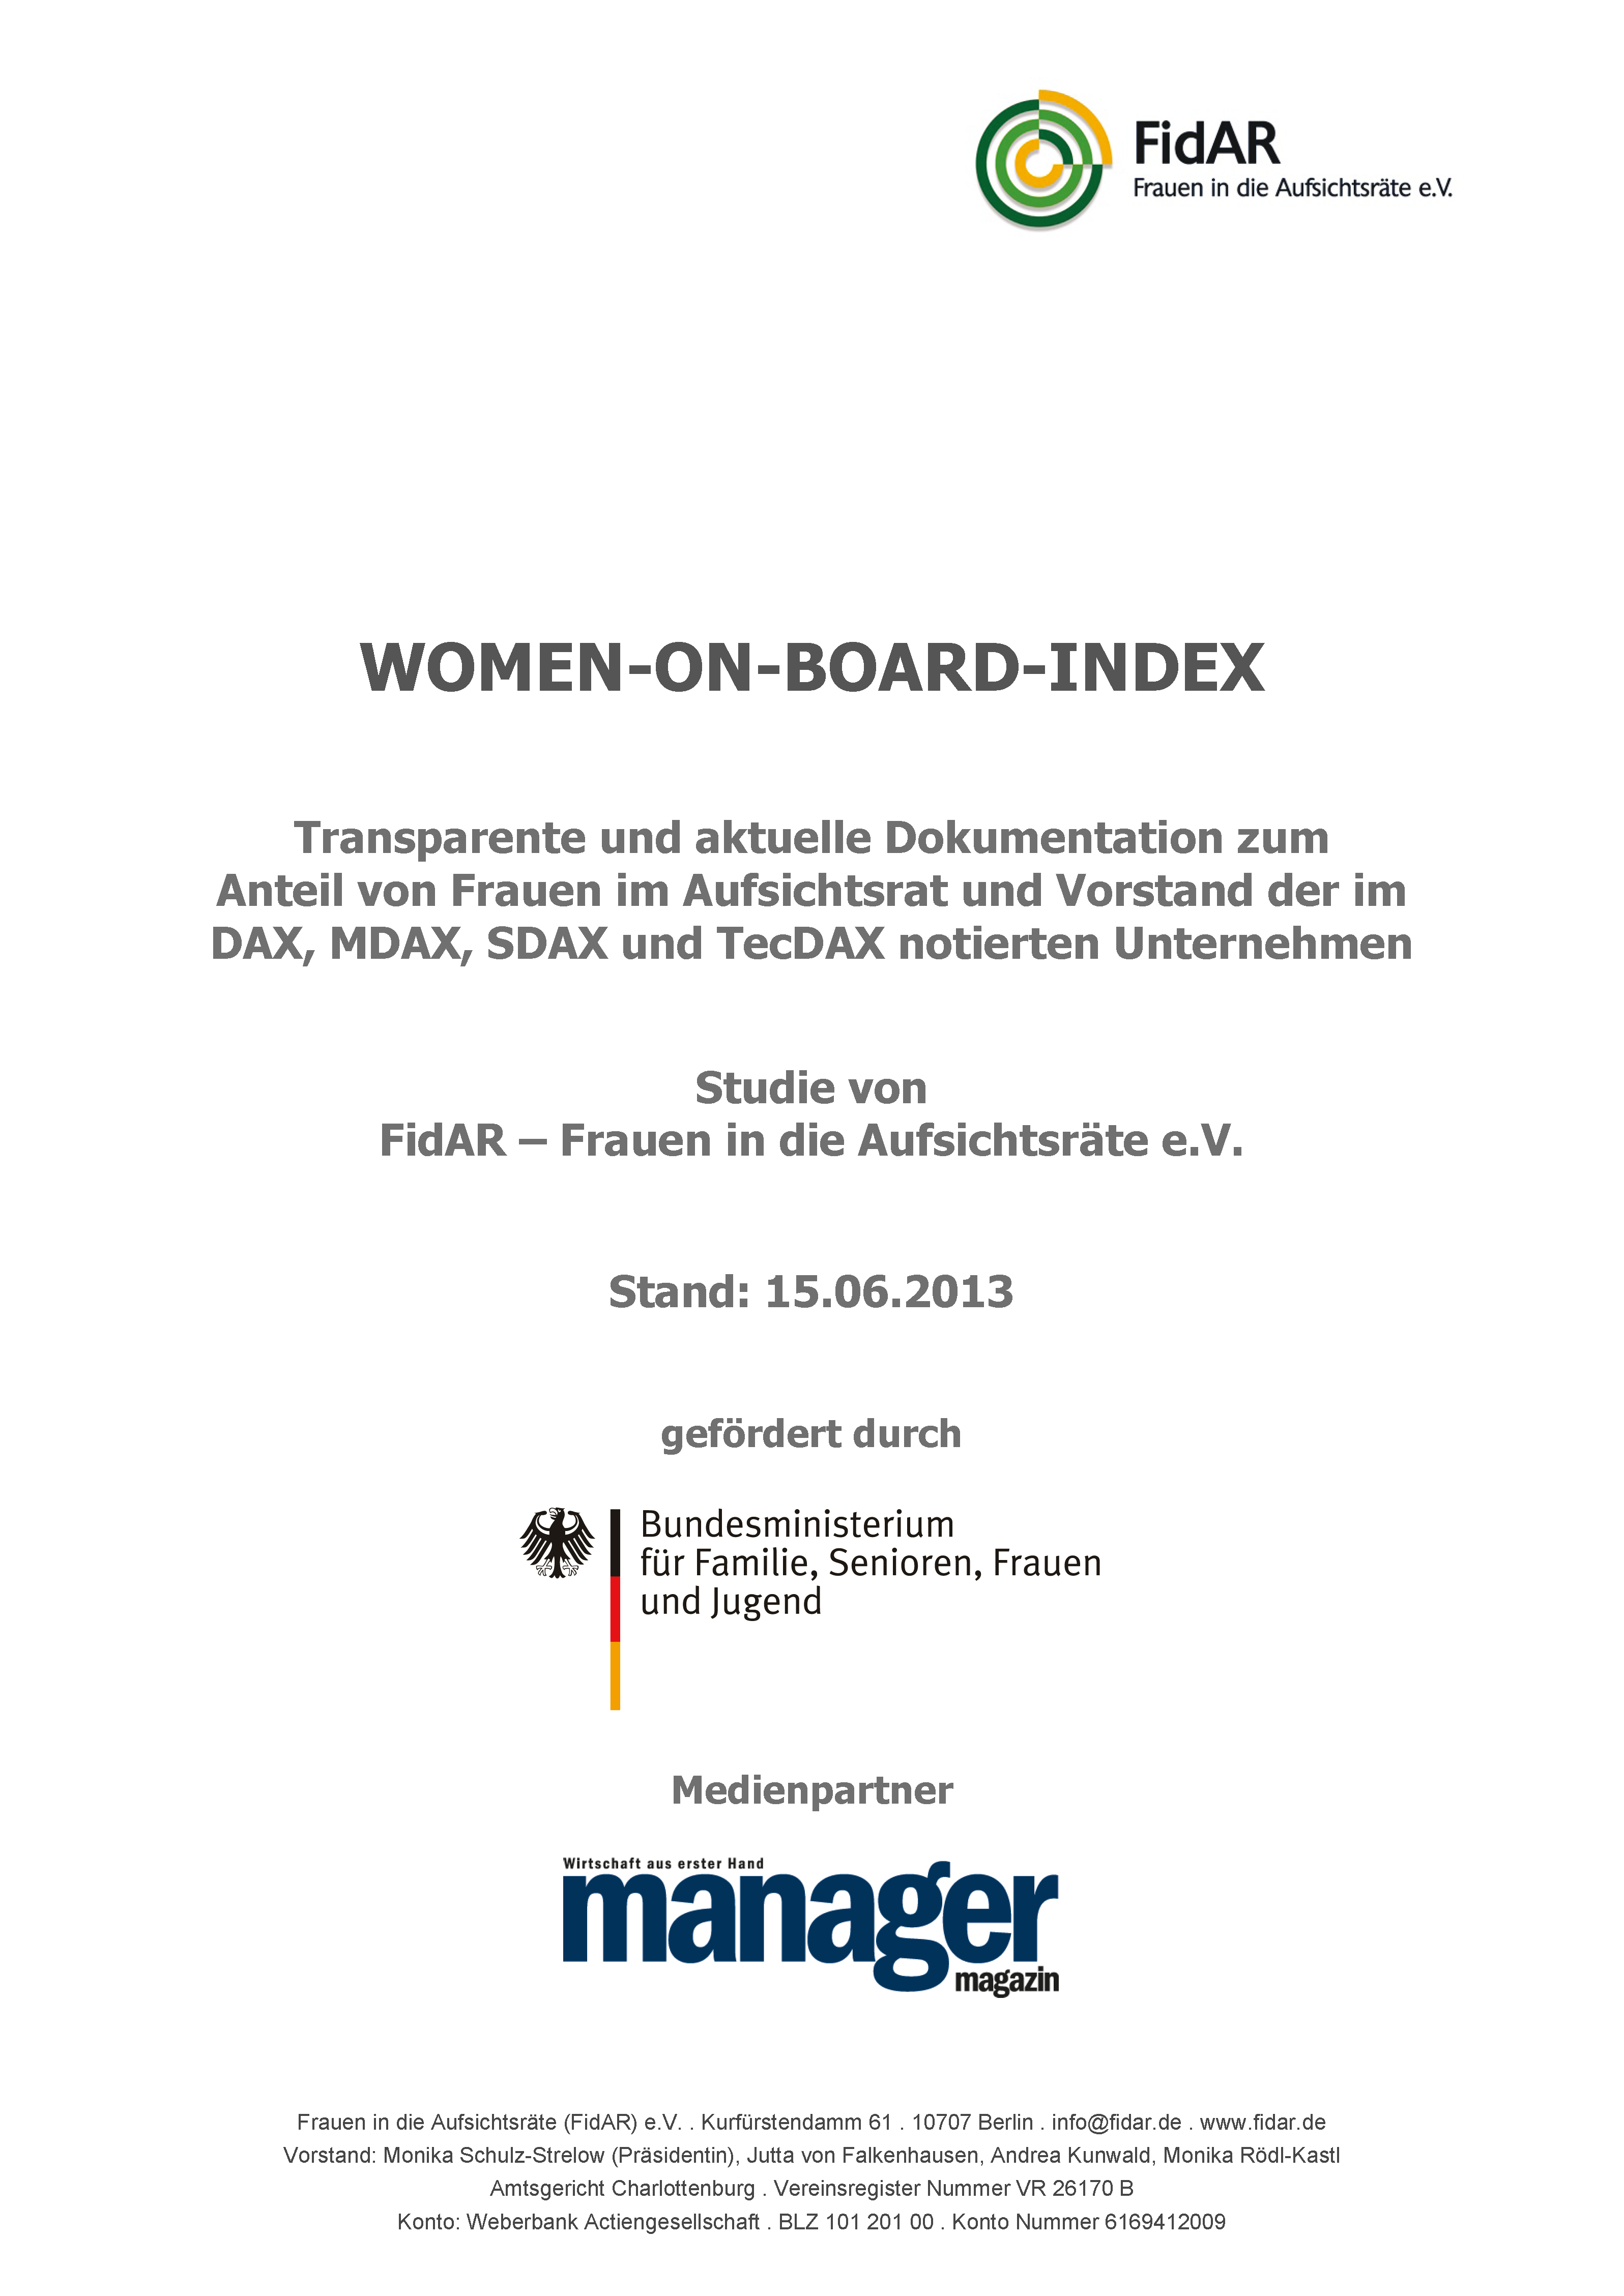 WoB-Index 160 2013-2